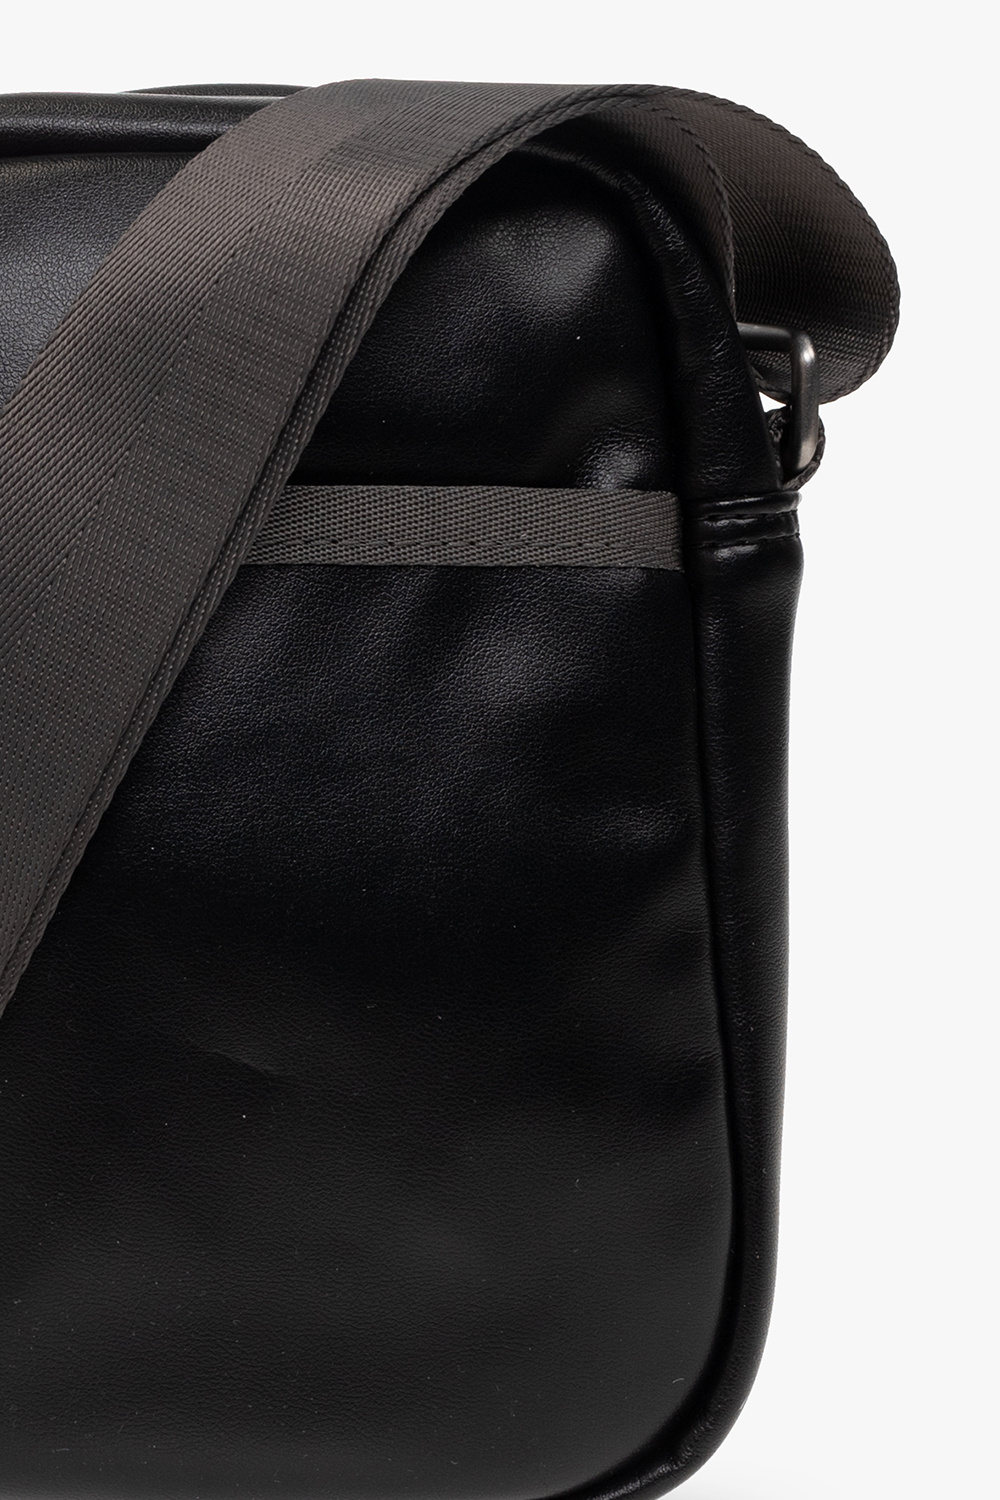 Louis Vuitton Coussin PM Tote Bag - Vitkac shop online